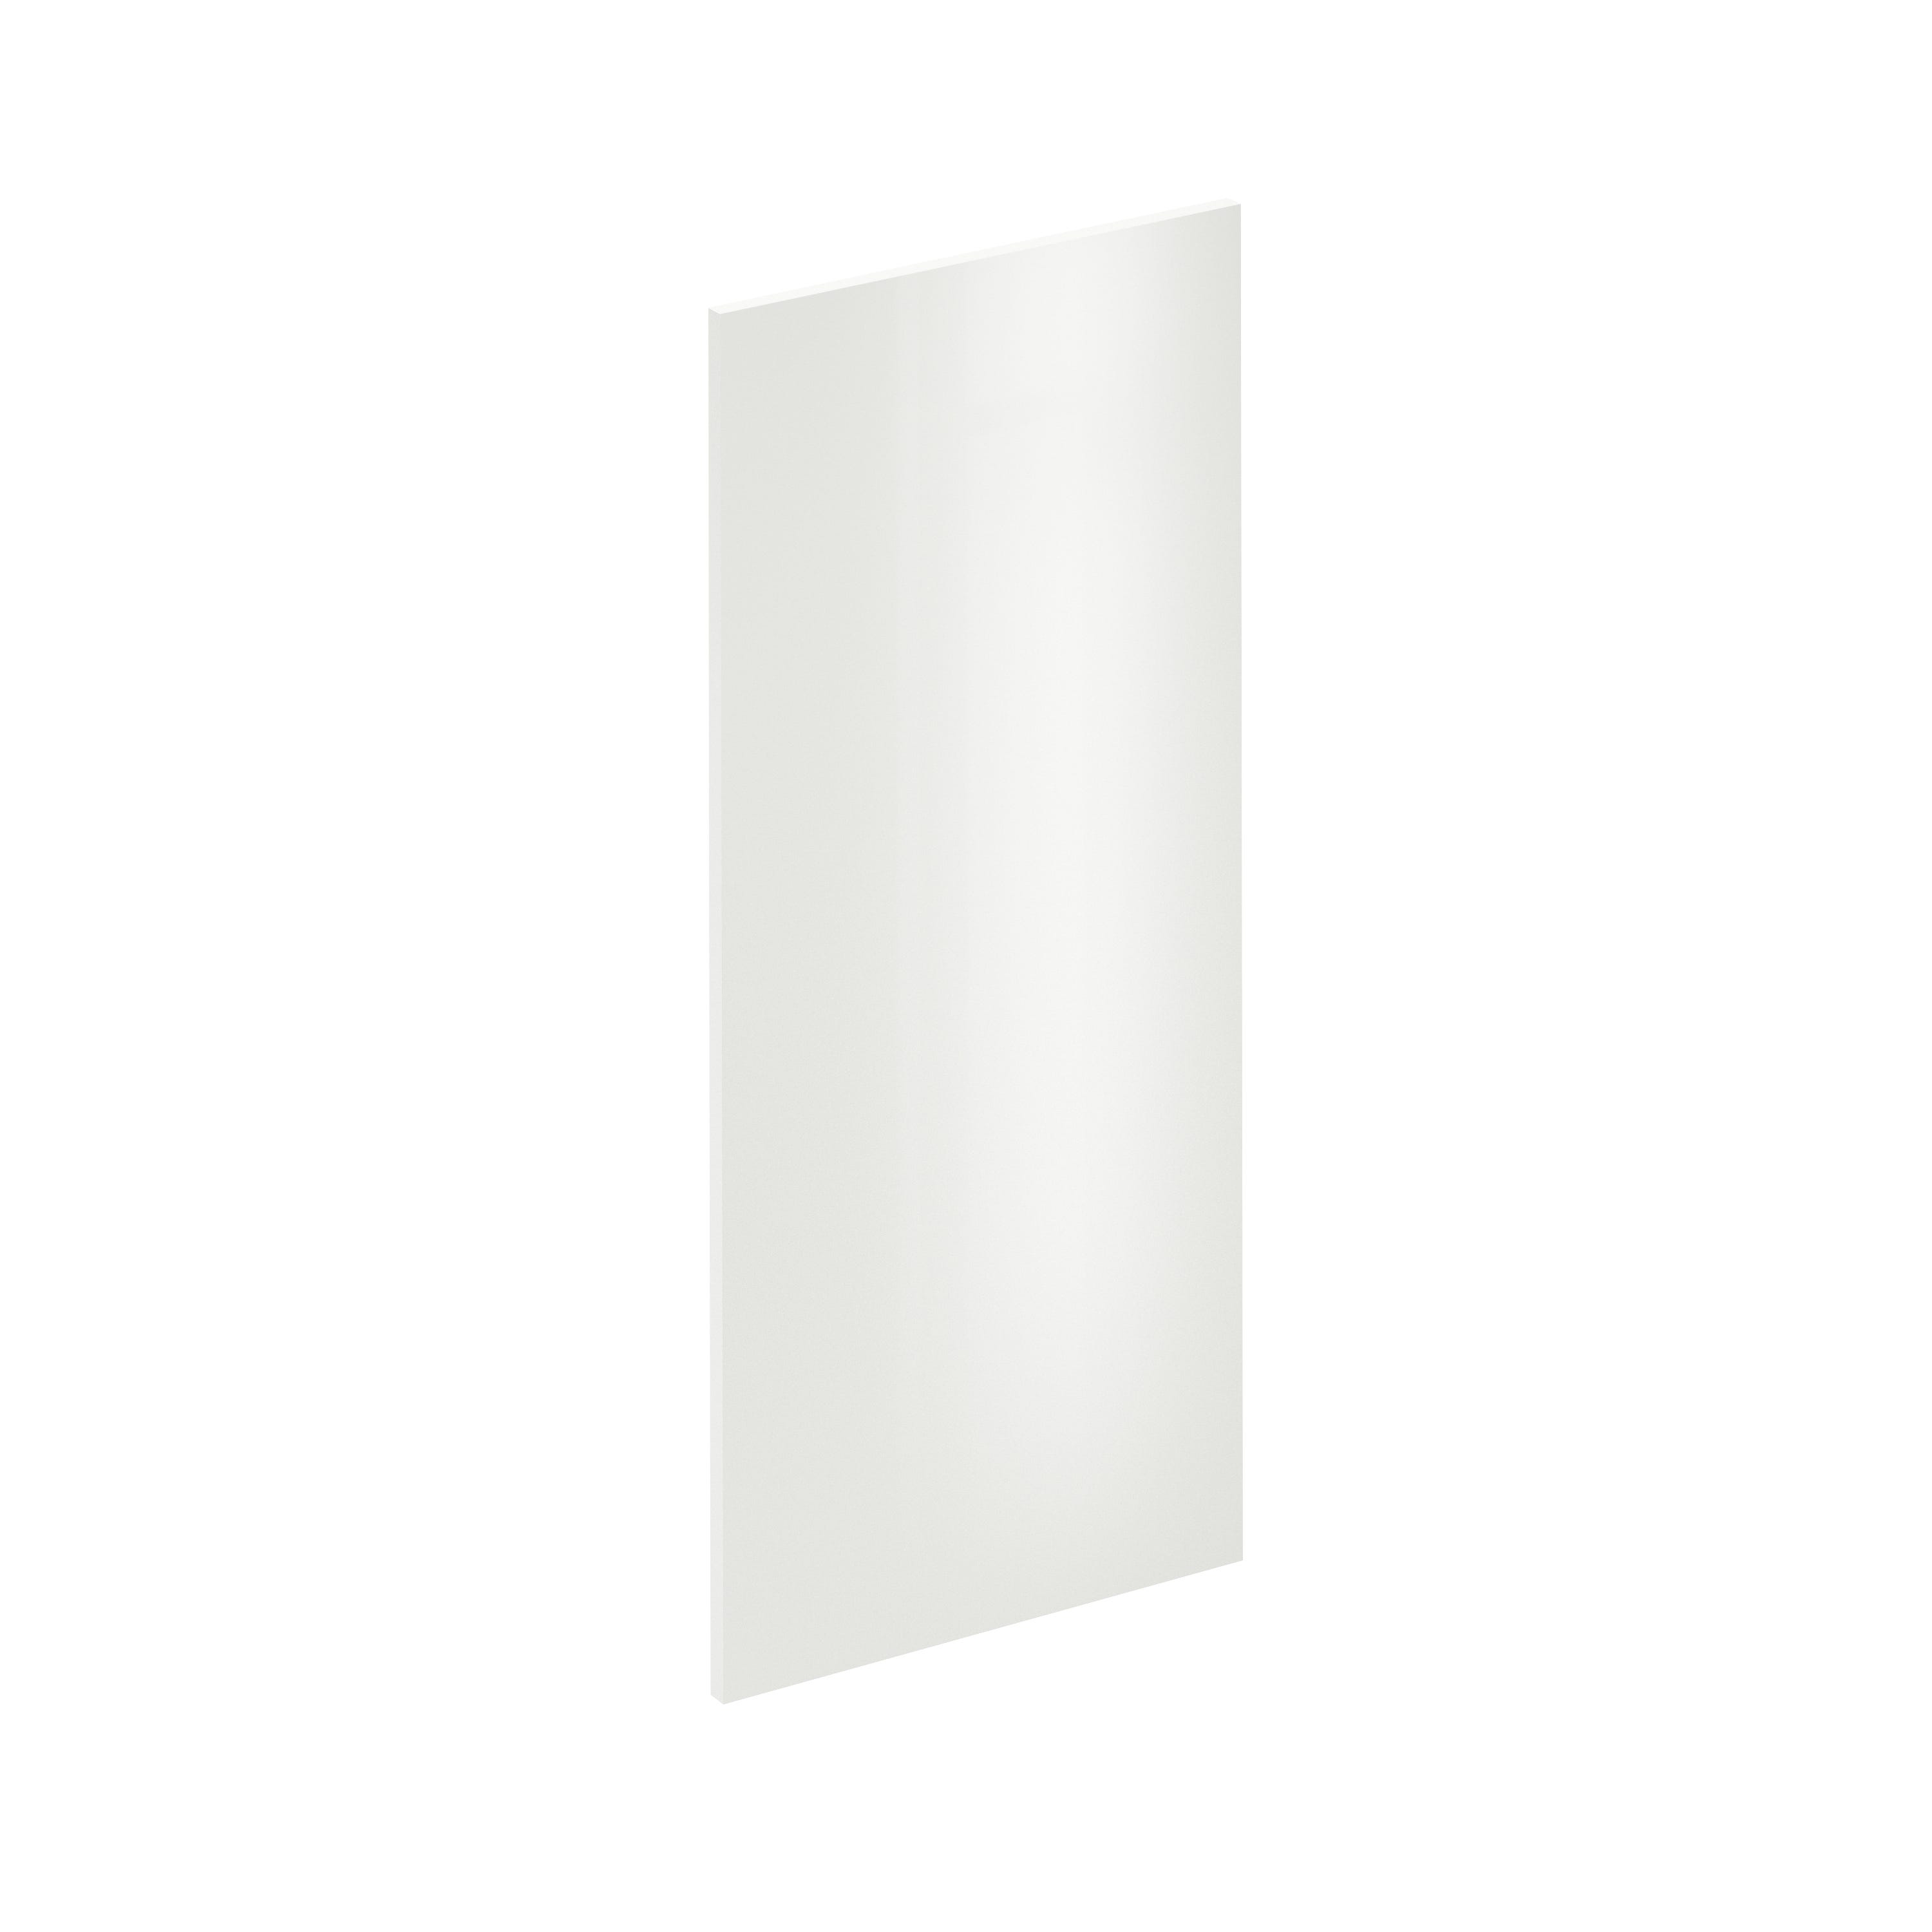 Puerta para mueble de cocina Tokyo blanco brillo H 76.8 x L 40 cm